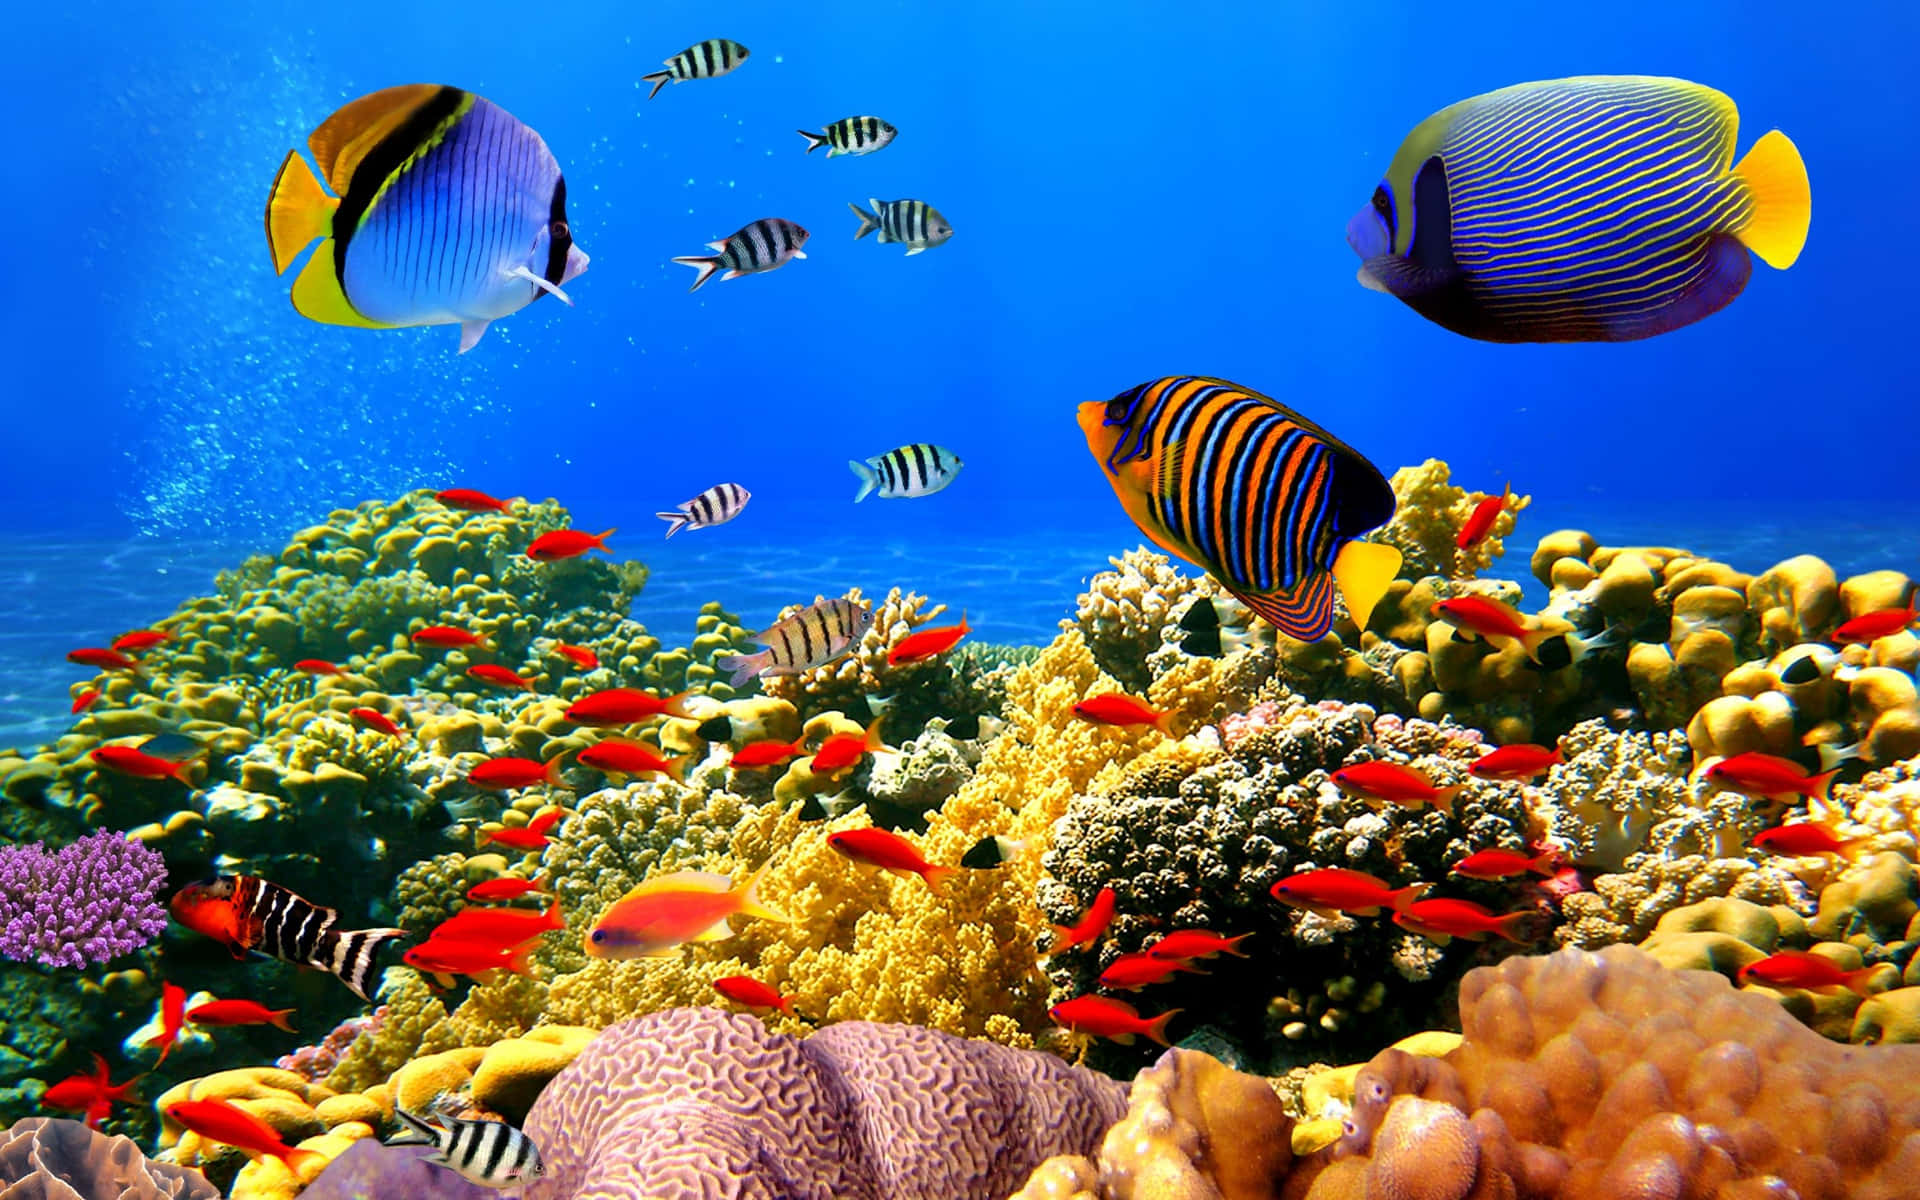 En fascinerende samling af koraller, fisk og andre havdyr fundet i et farverigt koralrev økosystem.